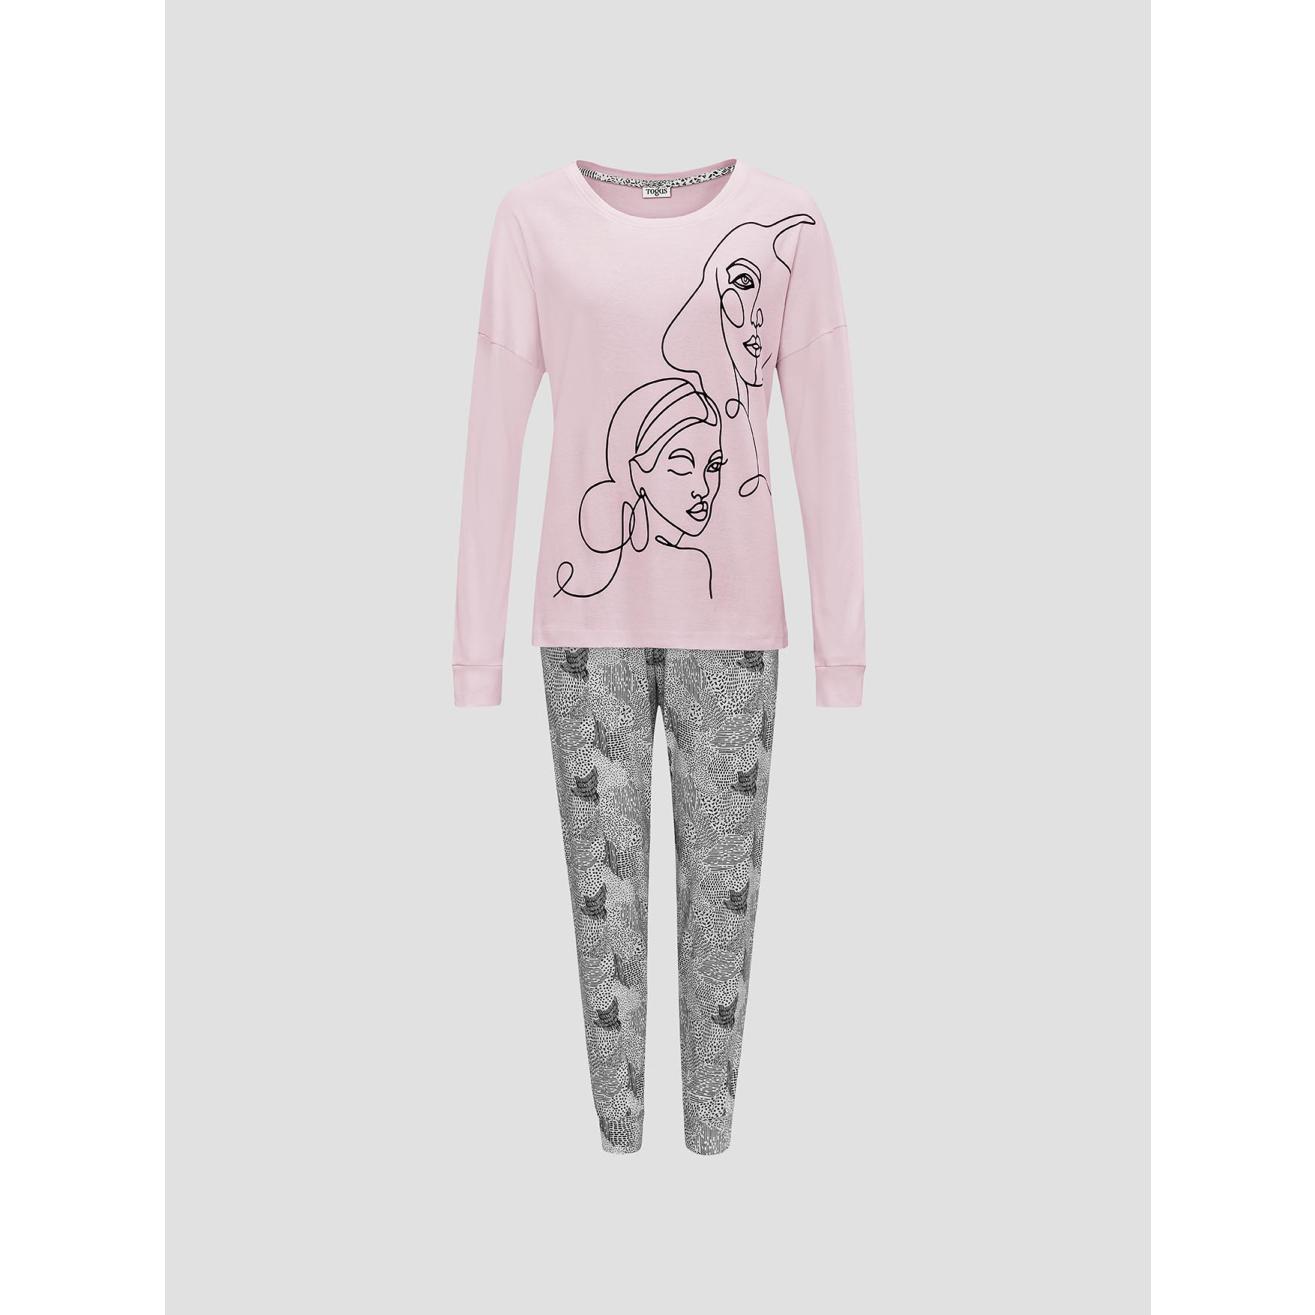 Пижама для девочек Togas Teens Кэрри розово-серая 146 см пижама футболка